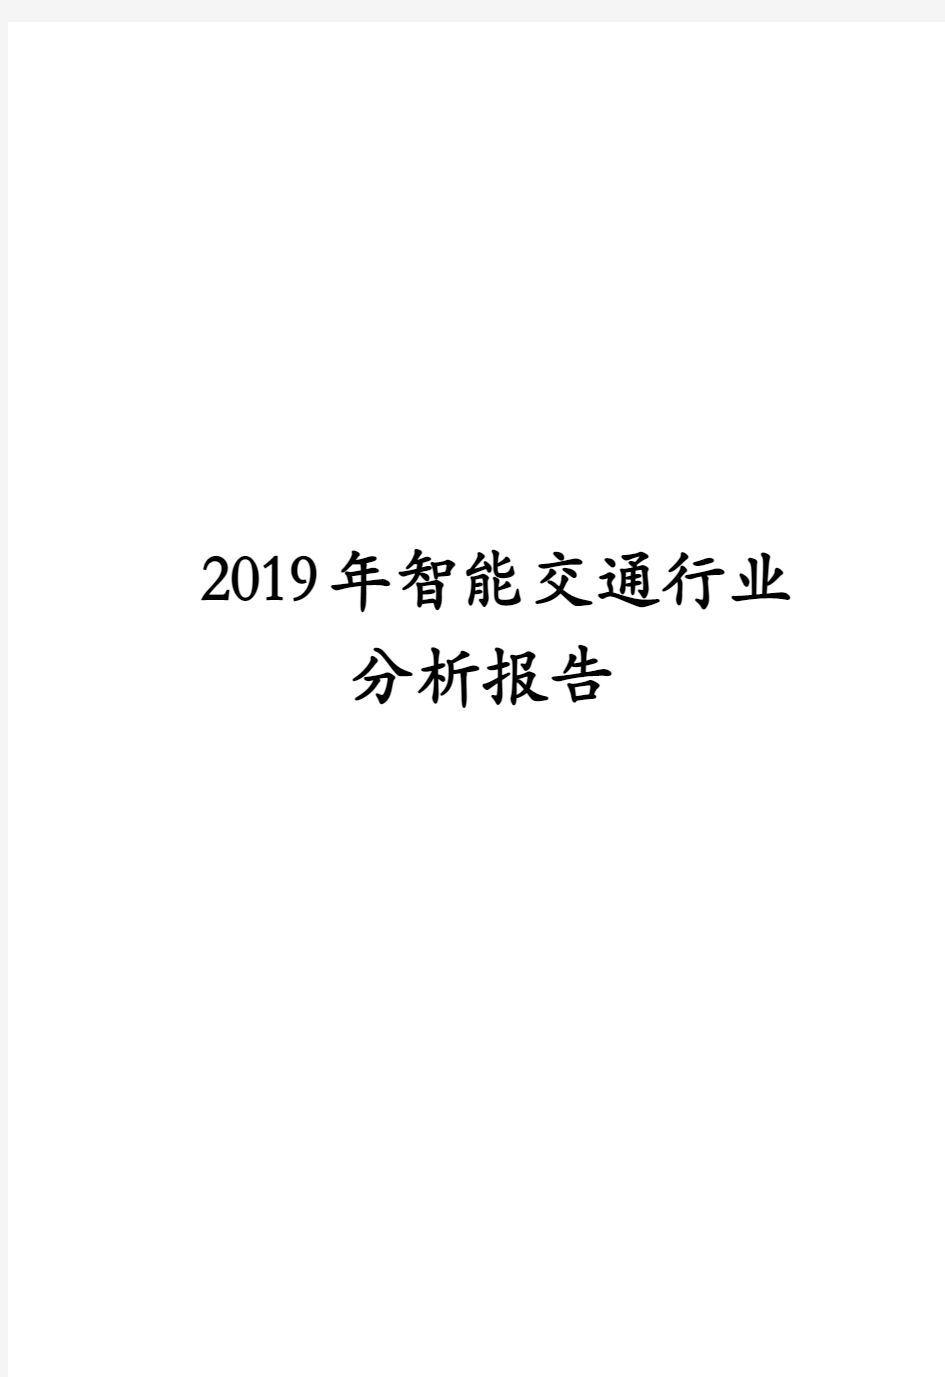 2019年智能交通行业分析报告 (5)